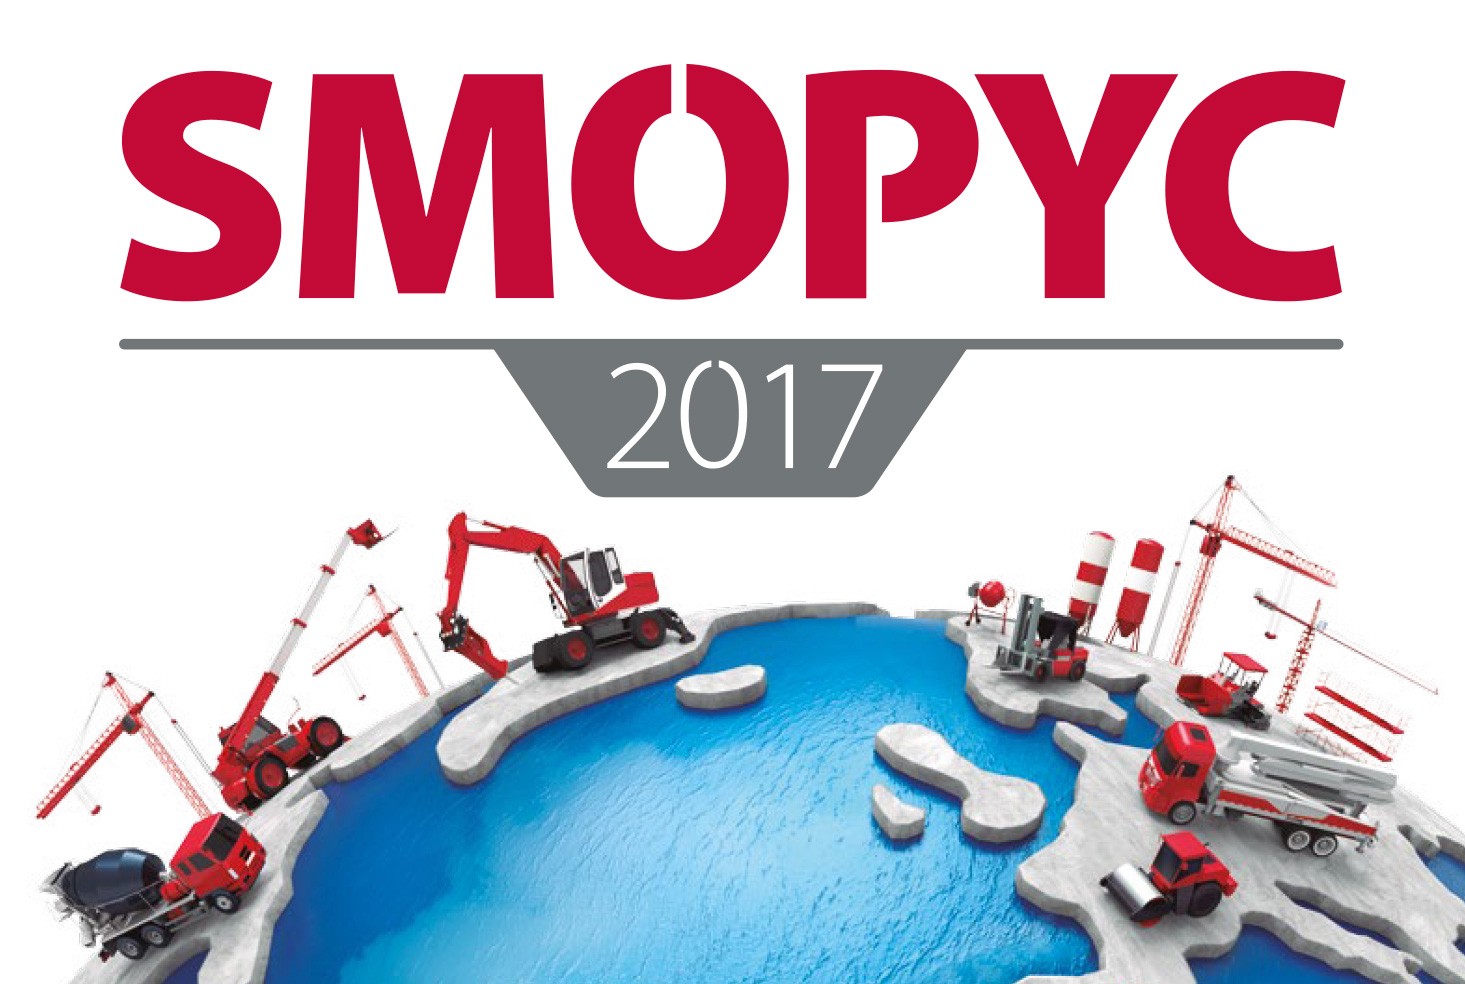 SMOPYC 2017 lleva su promoción a los principales foros sectoriales.
La próxima cita será del 25 al 29 de abril de 2017